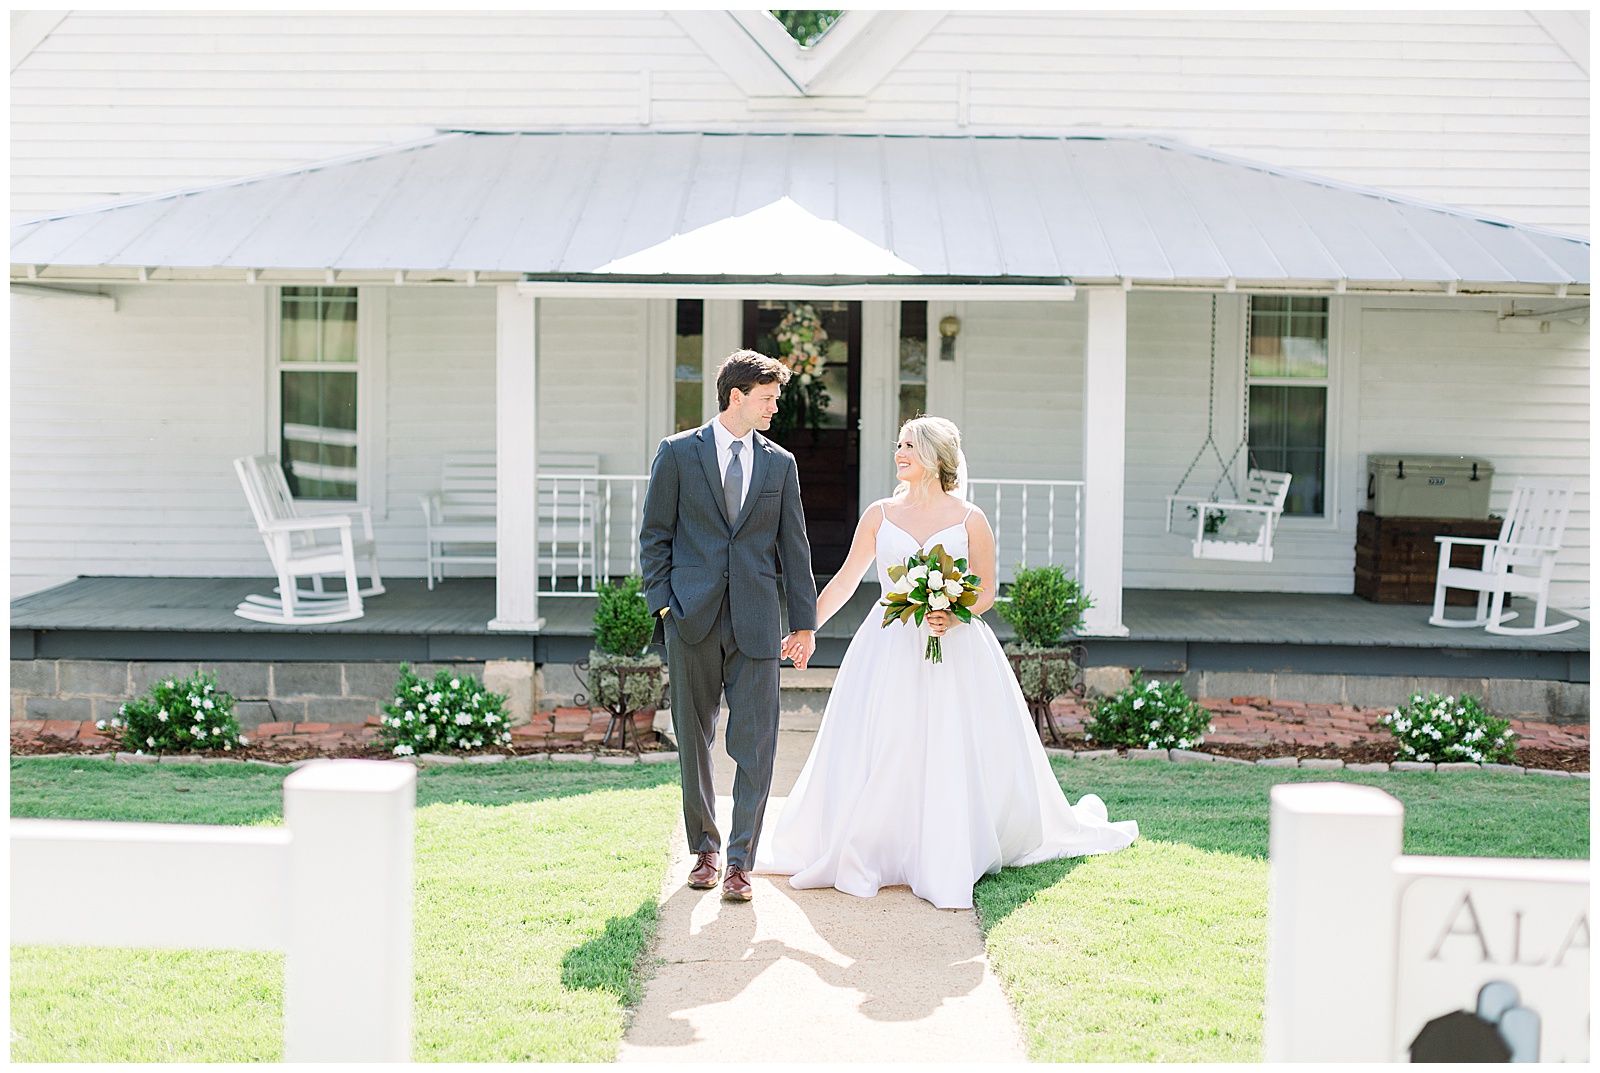 KelseyThomas_Bride&Groom_057_Tuscaloosa-Wedding-Birmingham-Alabama-Wedding-Photographers-Abby-Bates-Photography.jpg